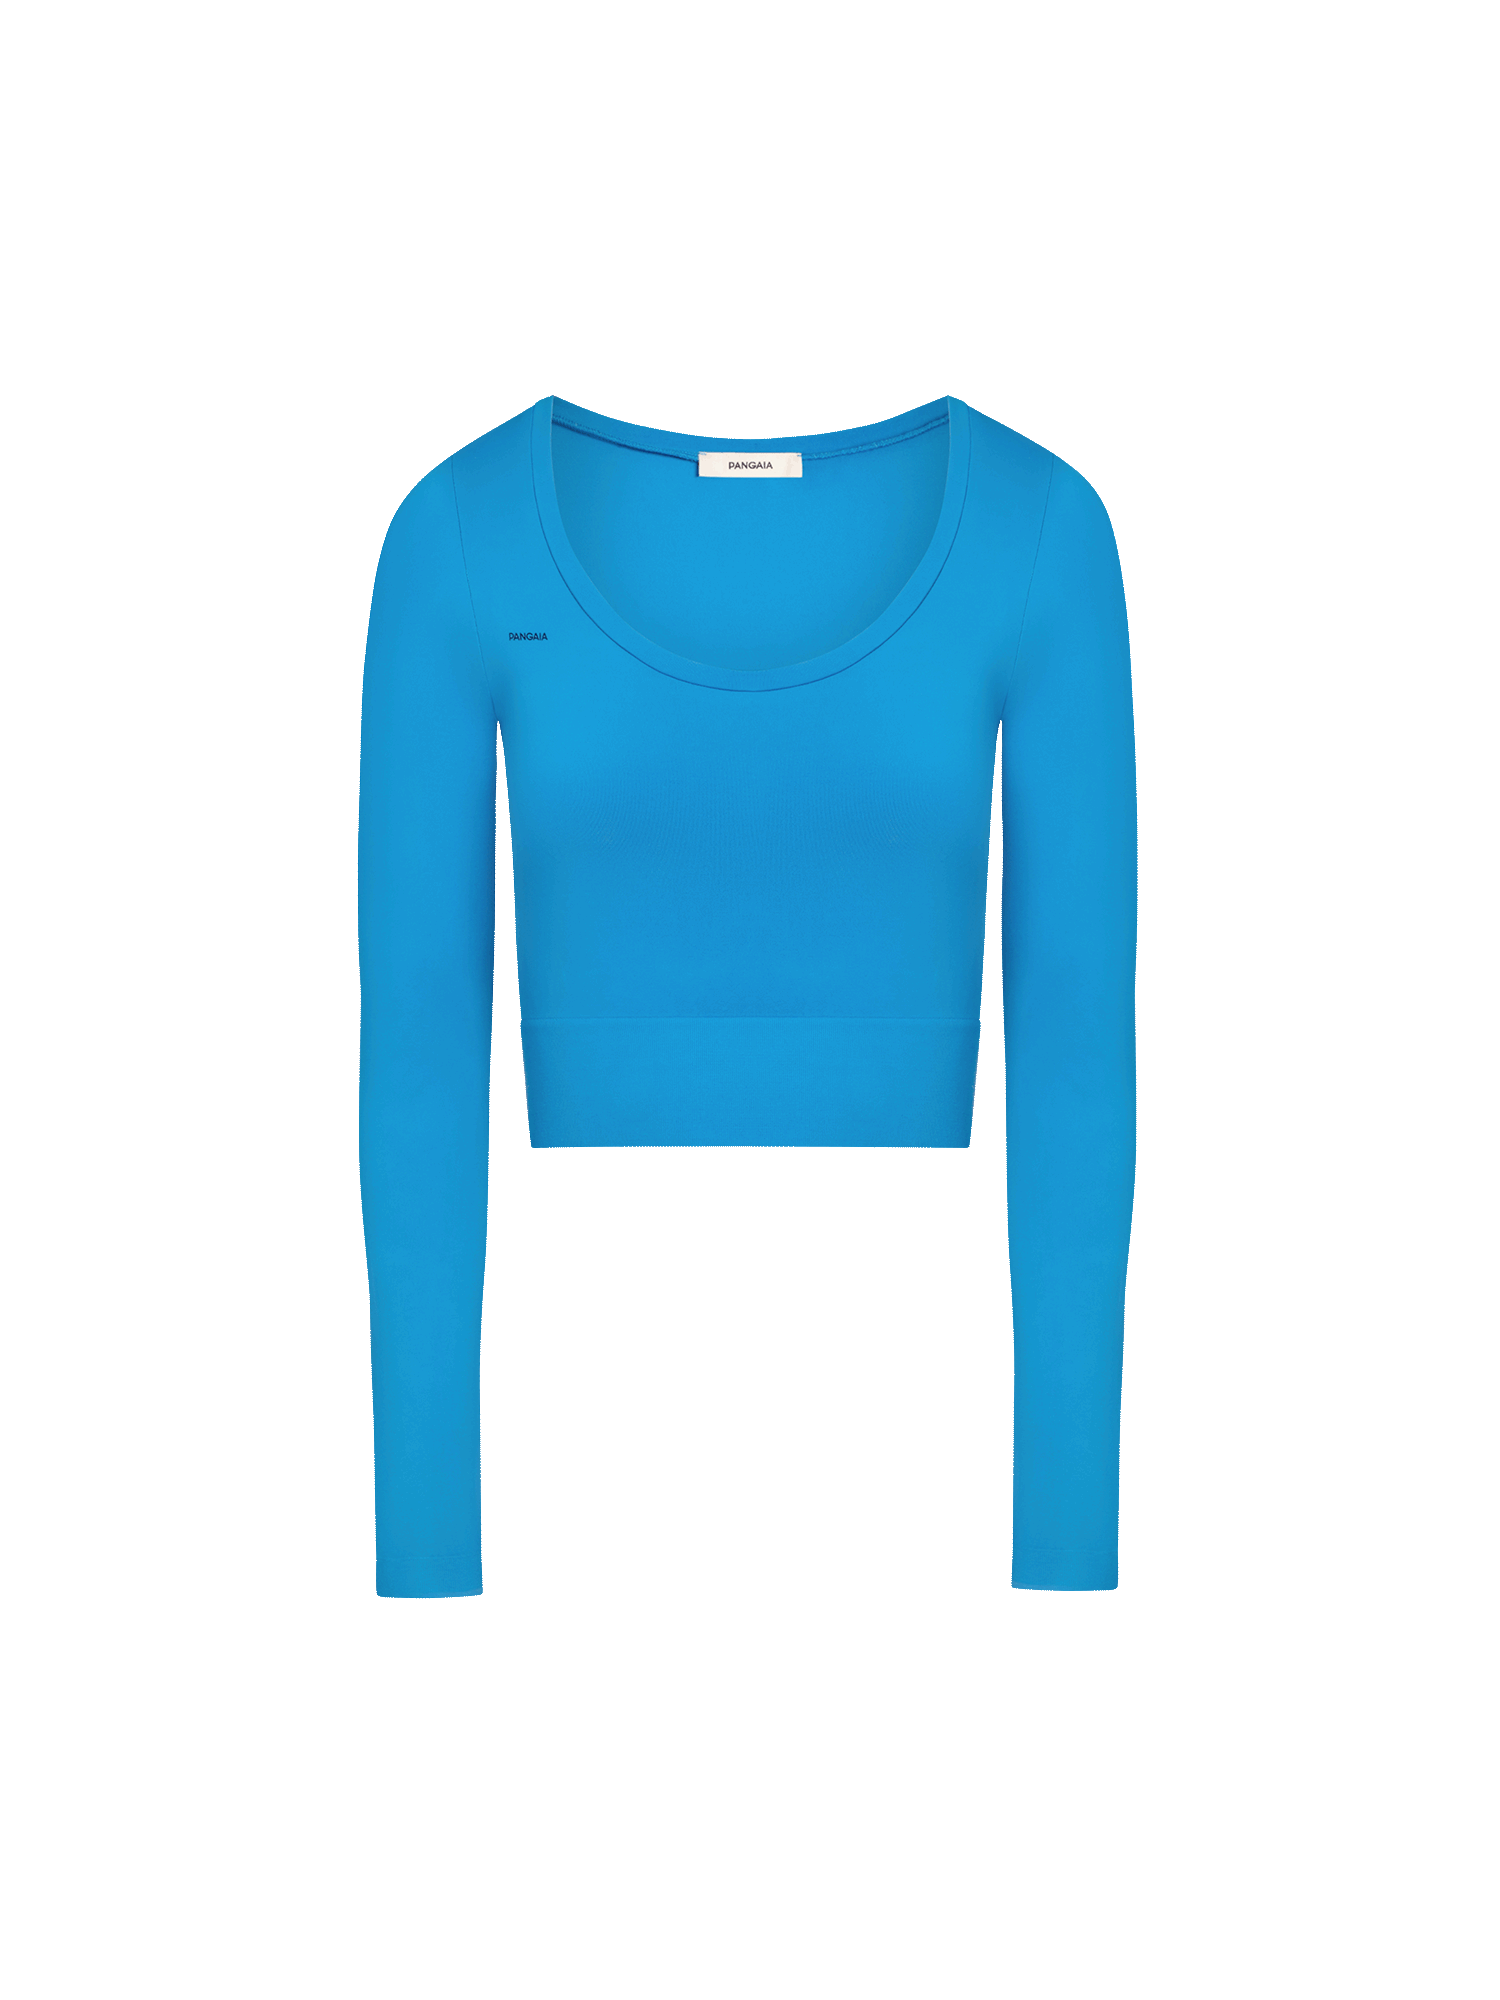 Activewear-3-0-Long-Sleeve-Crop-Top-Cerulean-Blue-packshot-3